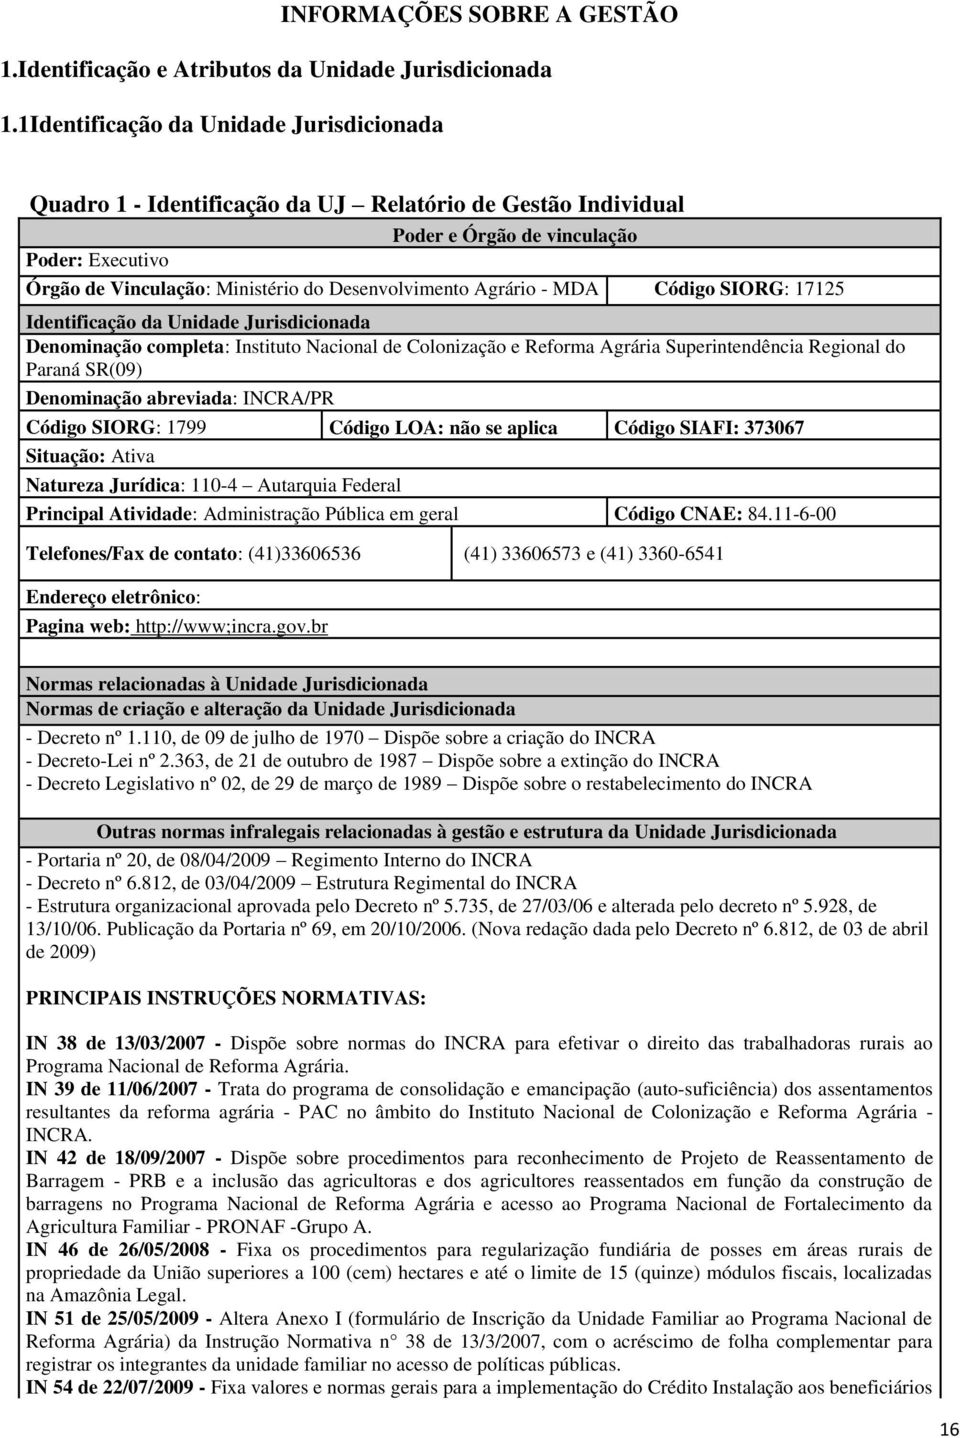 Agrário - MDA Código SIORG: 17125 Identificação da Unidade Jurisdicionada Denominação completa: Instituto Nacional de Colonização e Reforma Agrária Superintendência Regional do Paraná SR(09)